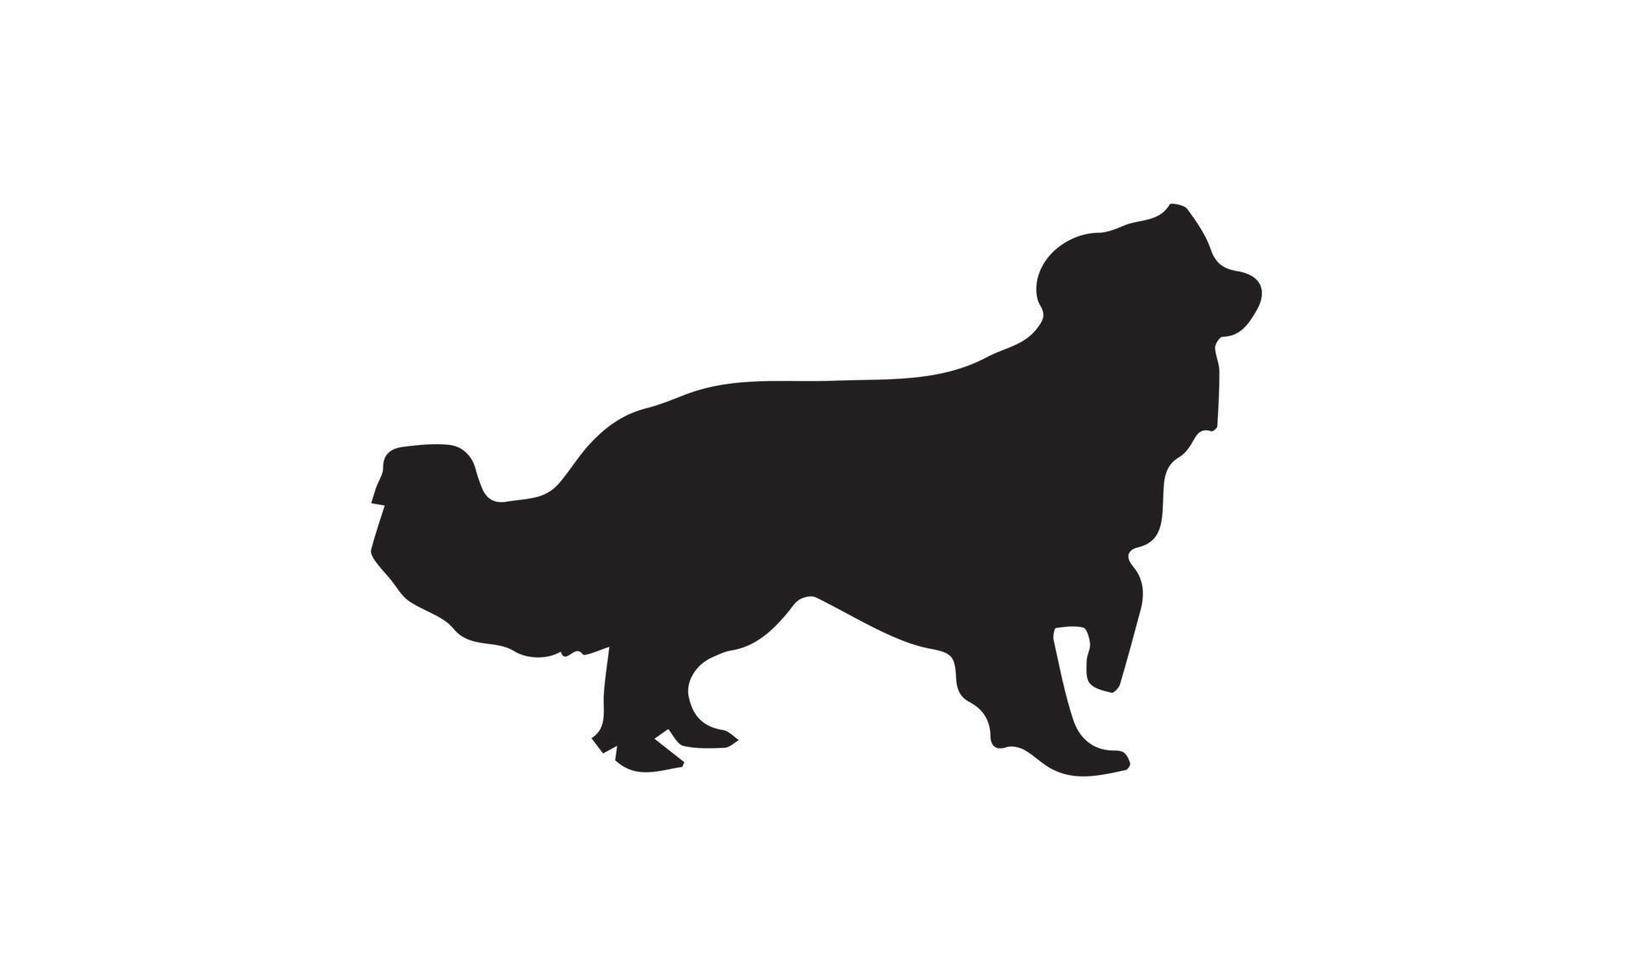 disegno dell'illustrazione di vettore della siluetta del cane